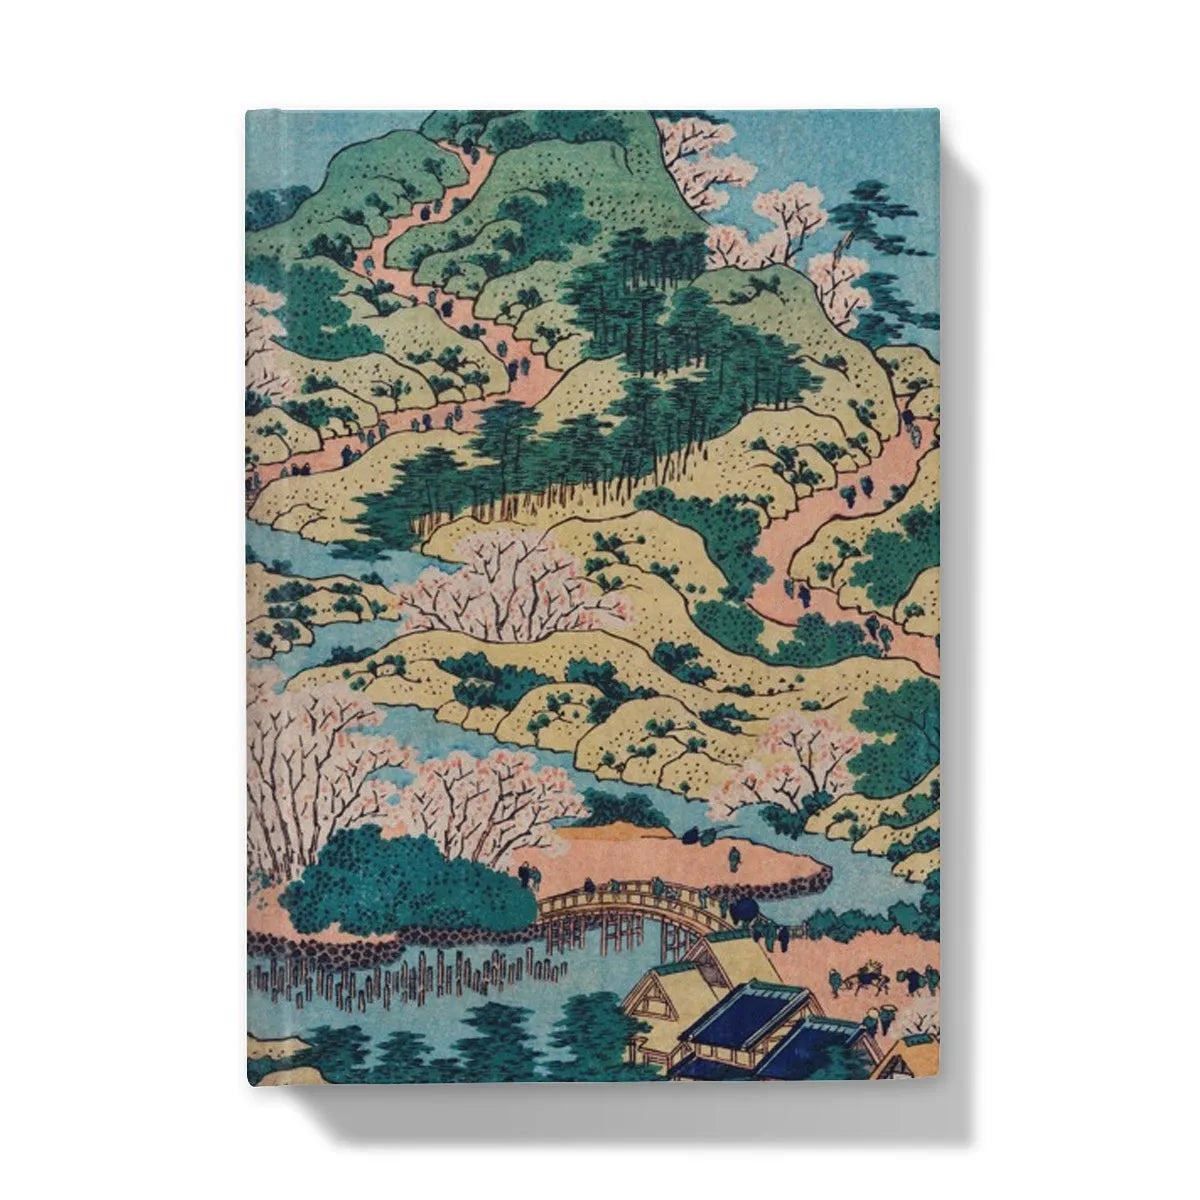 Sesshu Ajigawaguchi Tenposan By Katsushika Hokusai Hardback Journal - 5’x7’ / Lined - Notebooks & Notepads